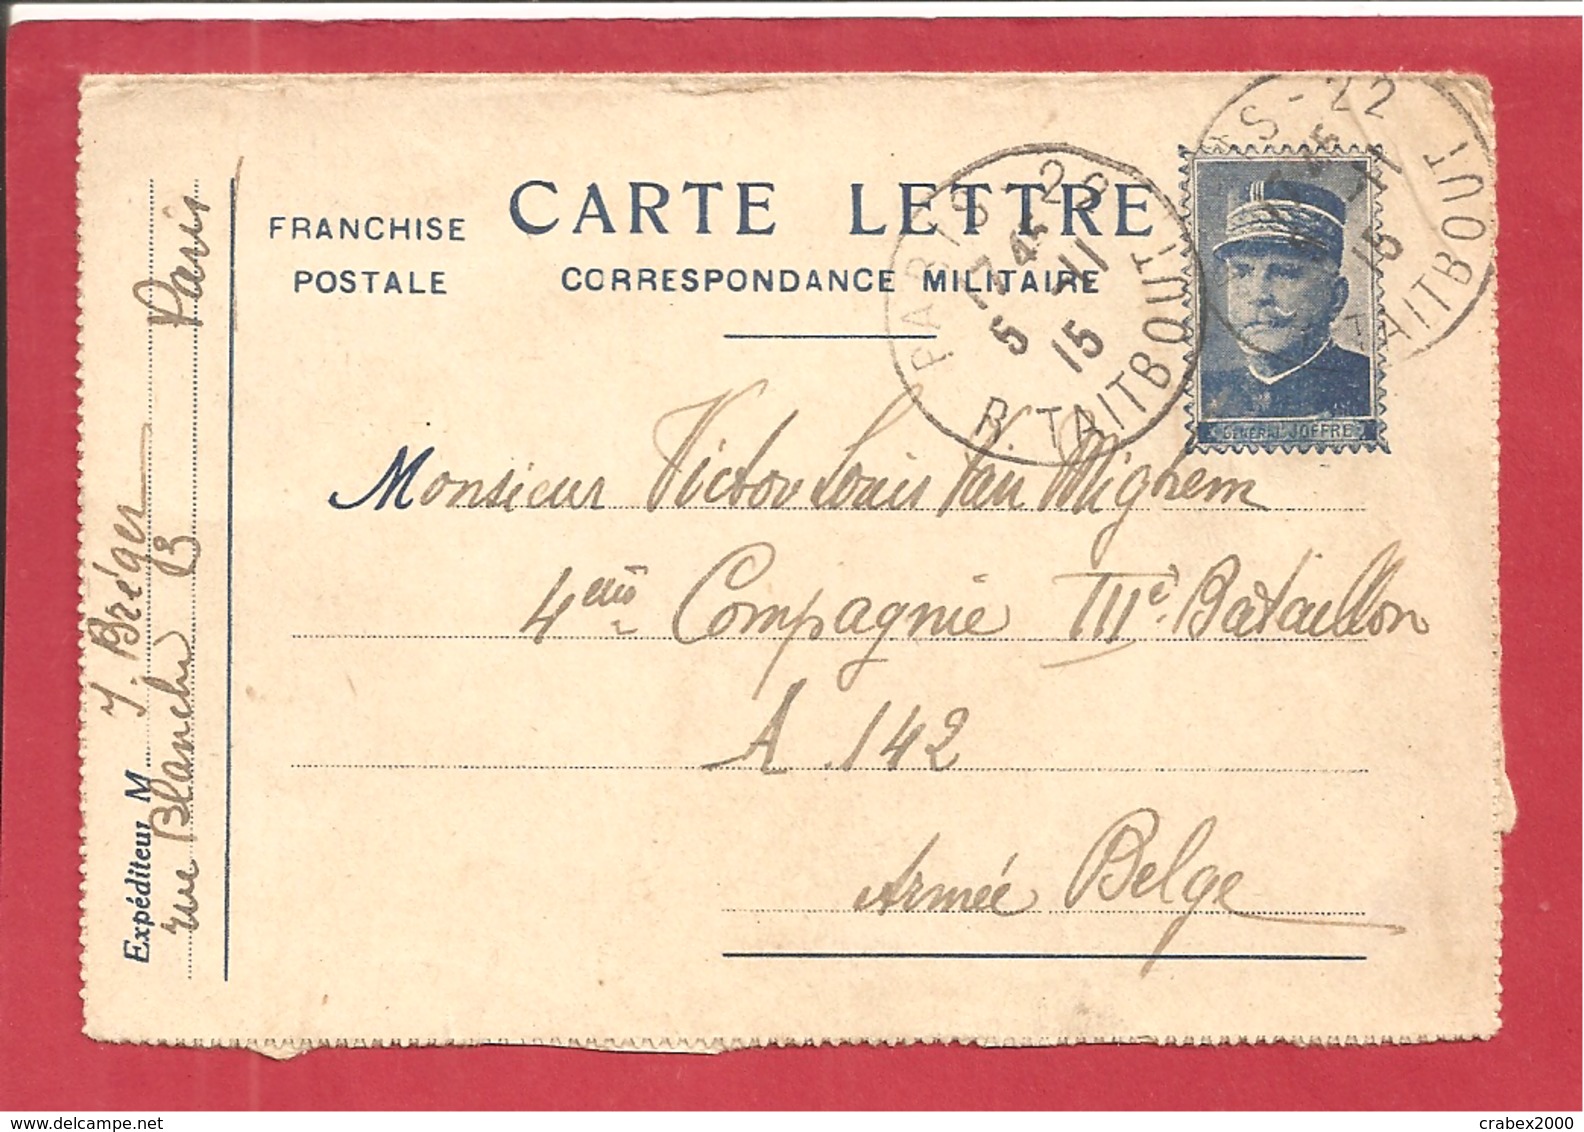 Y&T N°FM CARTE LETTRE PARIS Vers A142 ARMEE BELGE 1915 3 SCANS - Belgische Armee